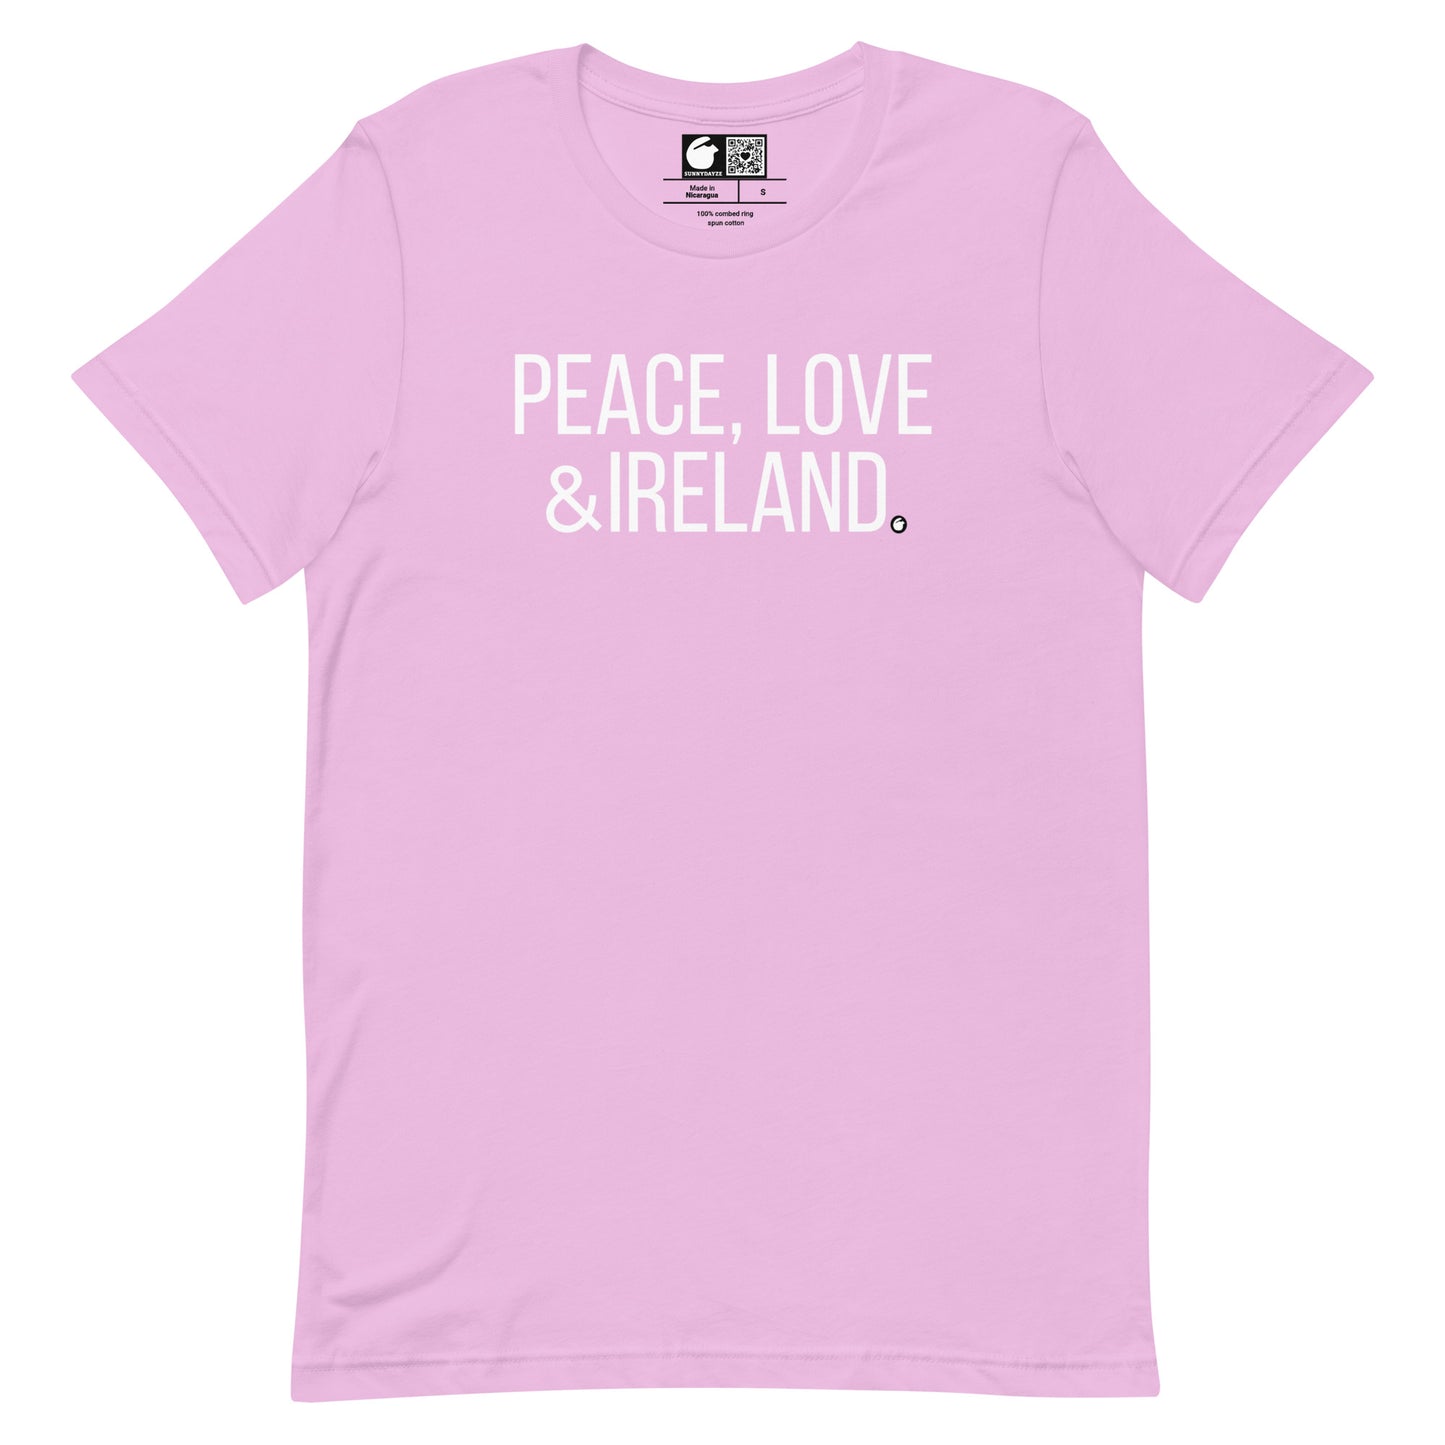 IRELAND Short-Sleeve Unisex t-shirt